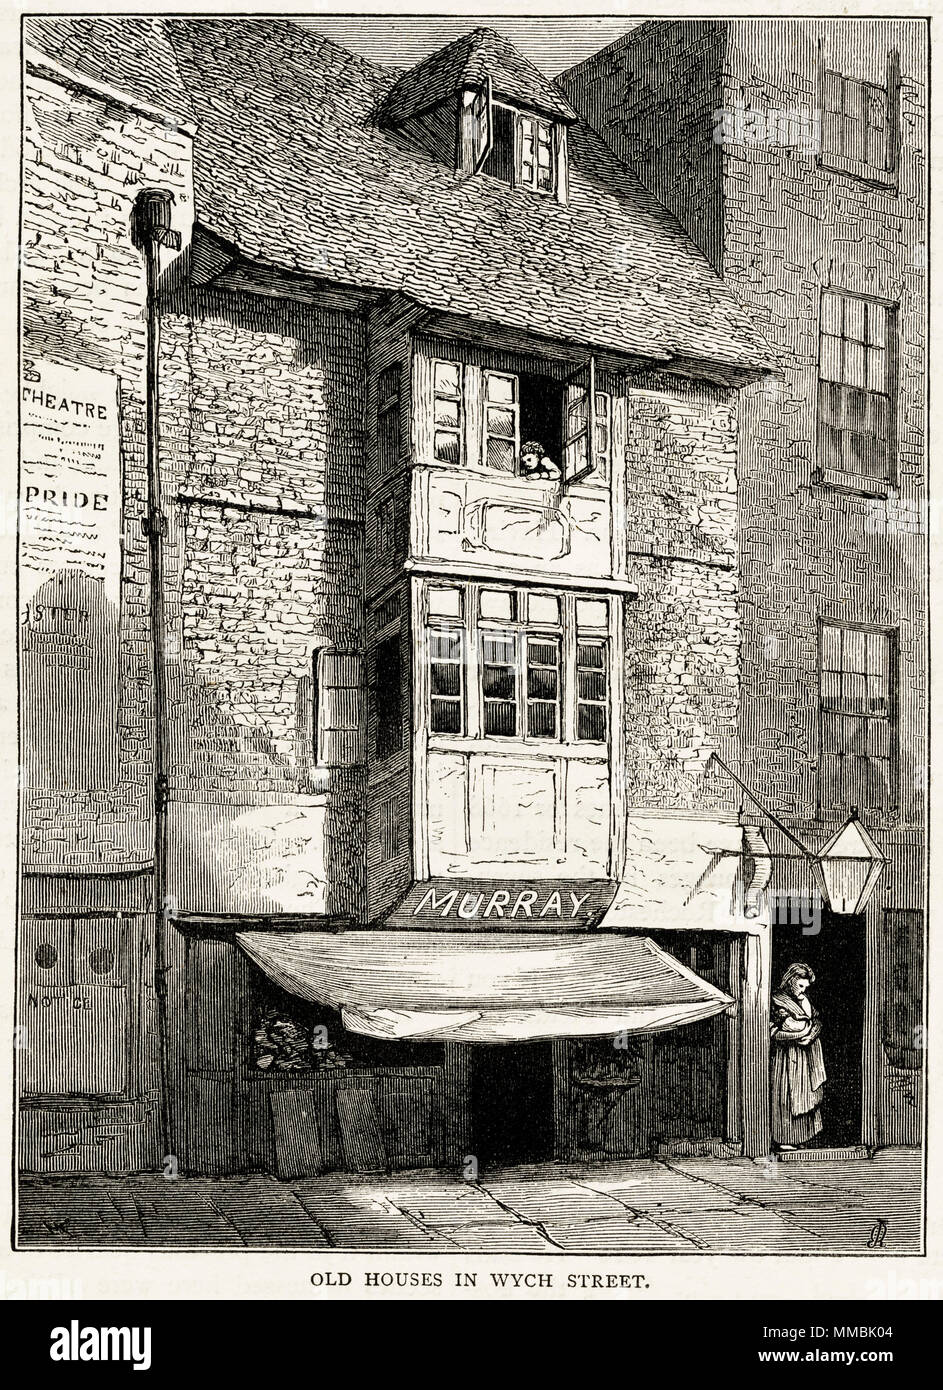 Maisons anciennes & shop Wych Street, Londres, Angleterre, Royaume-Uni. 19ème siècle gravure victorienne circa 1878 Banque D'Images